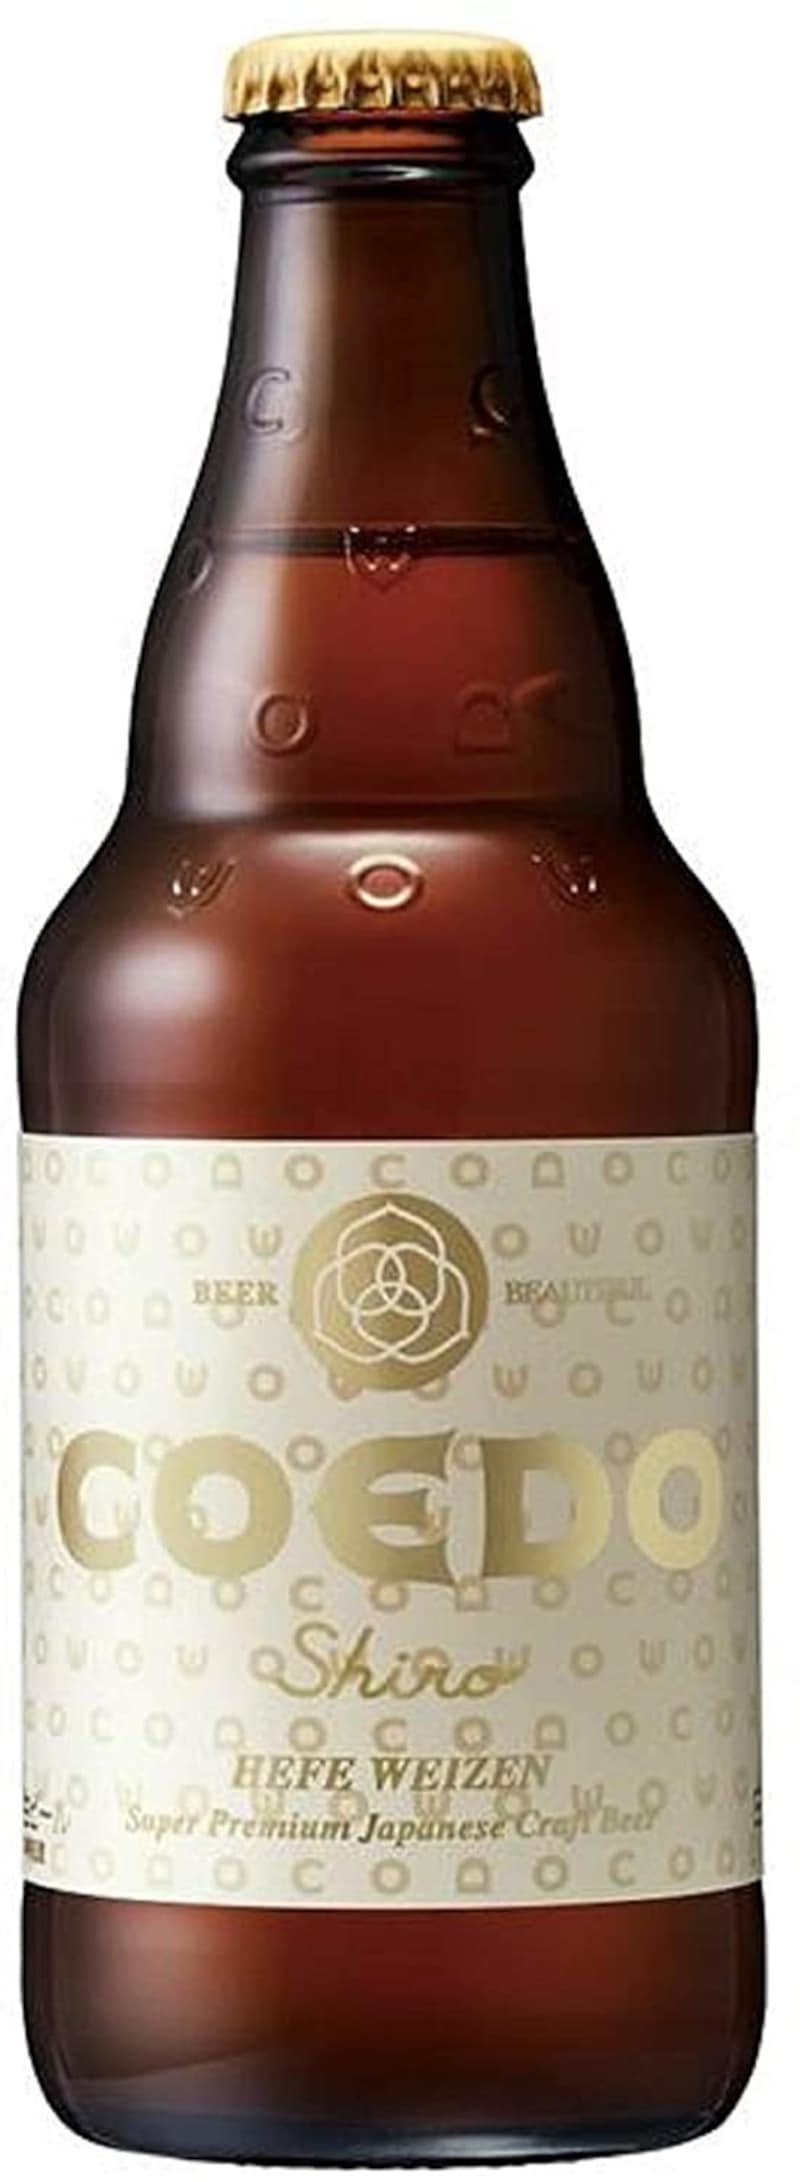 COEDO（コエド）,コエドビール 白‐Shiro- 3本